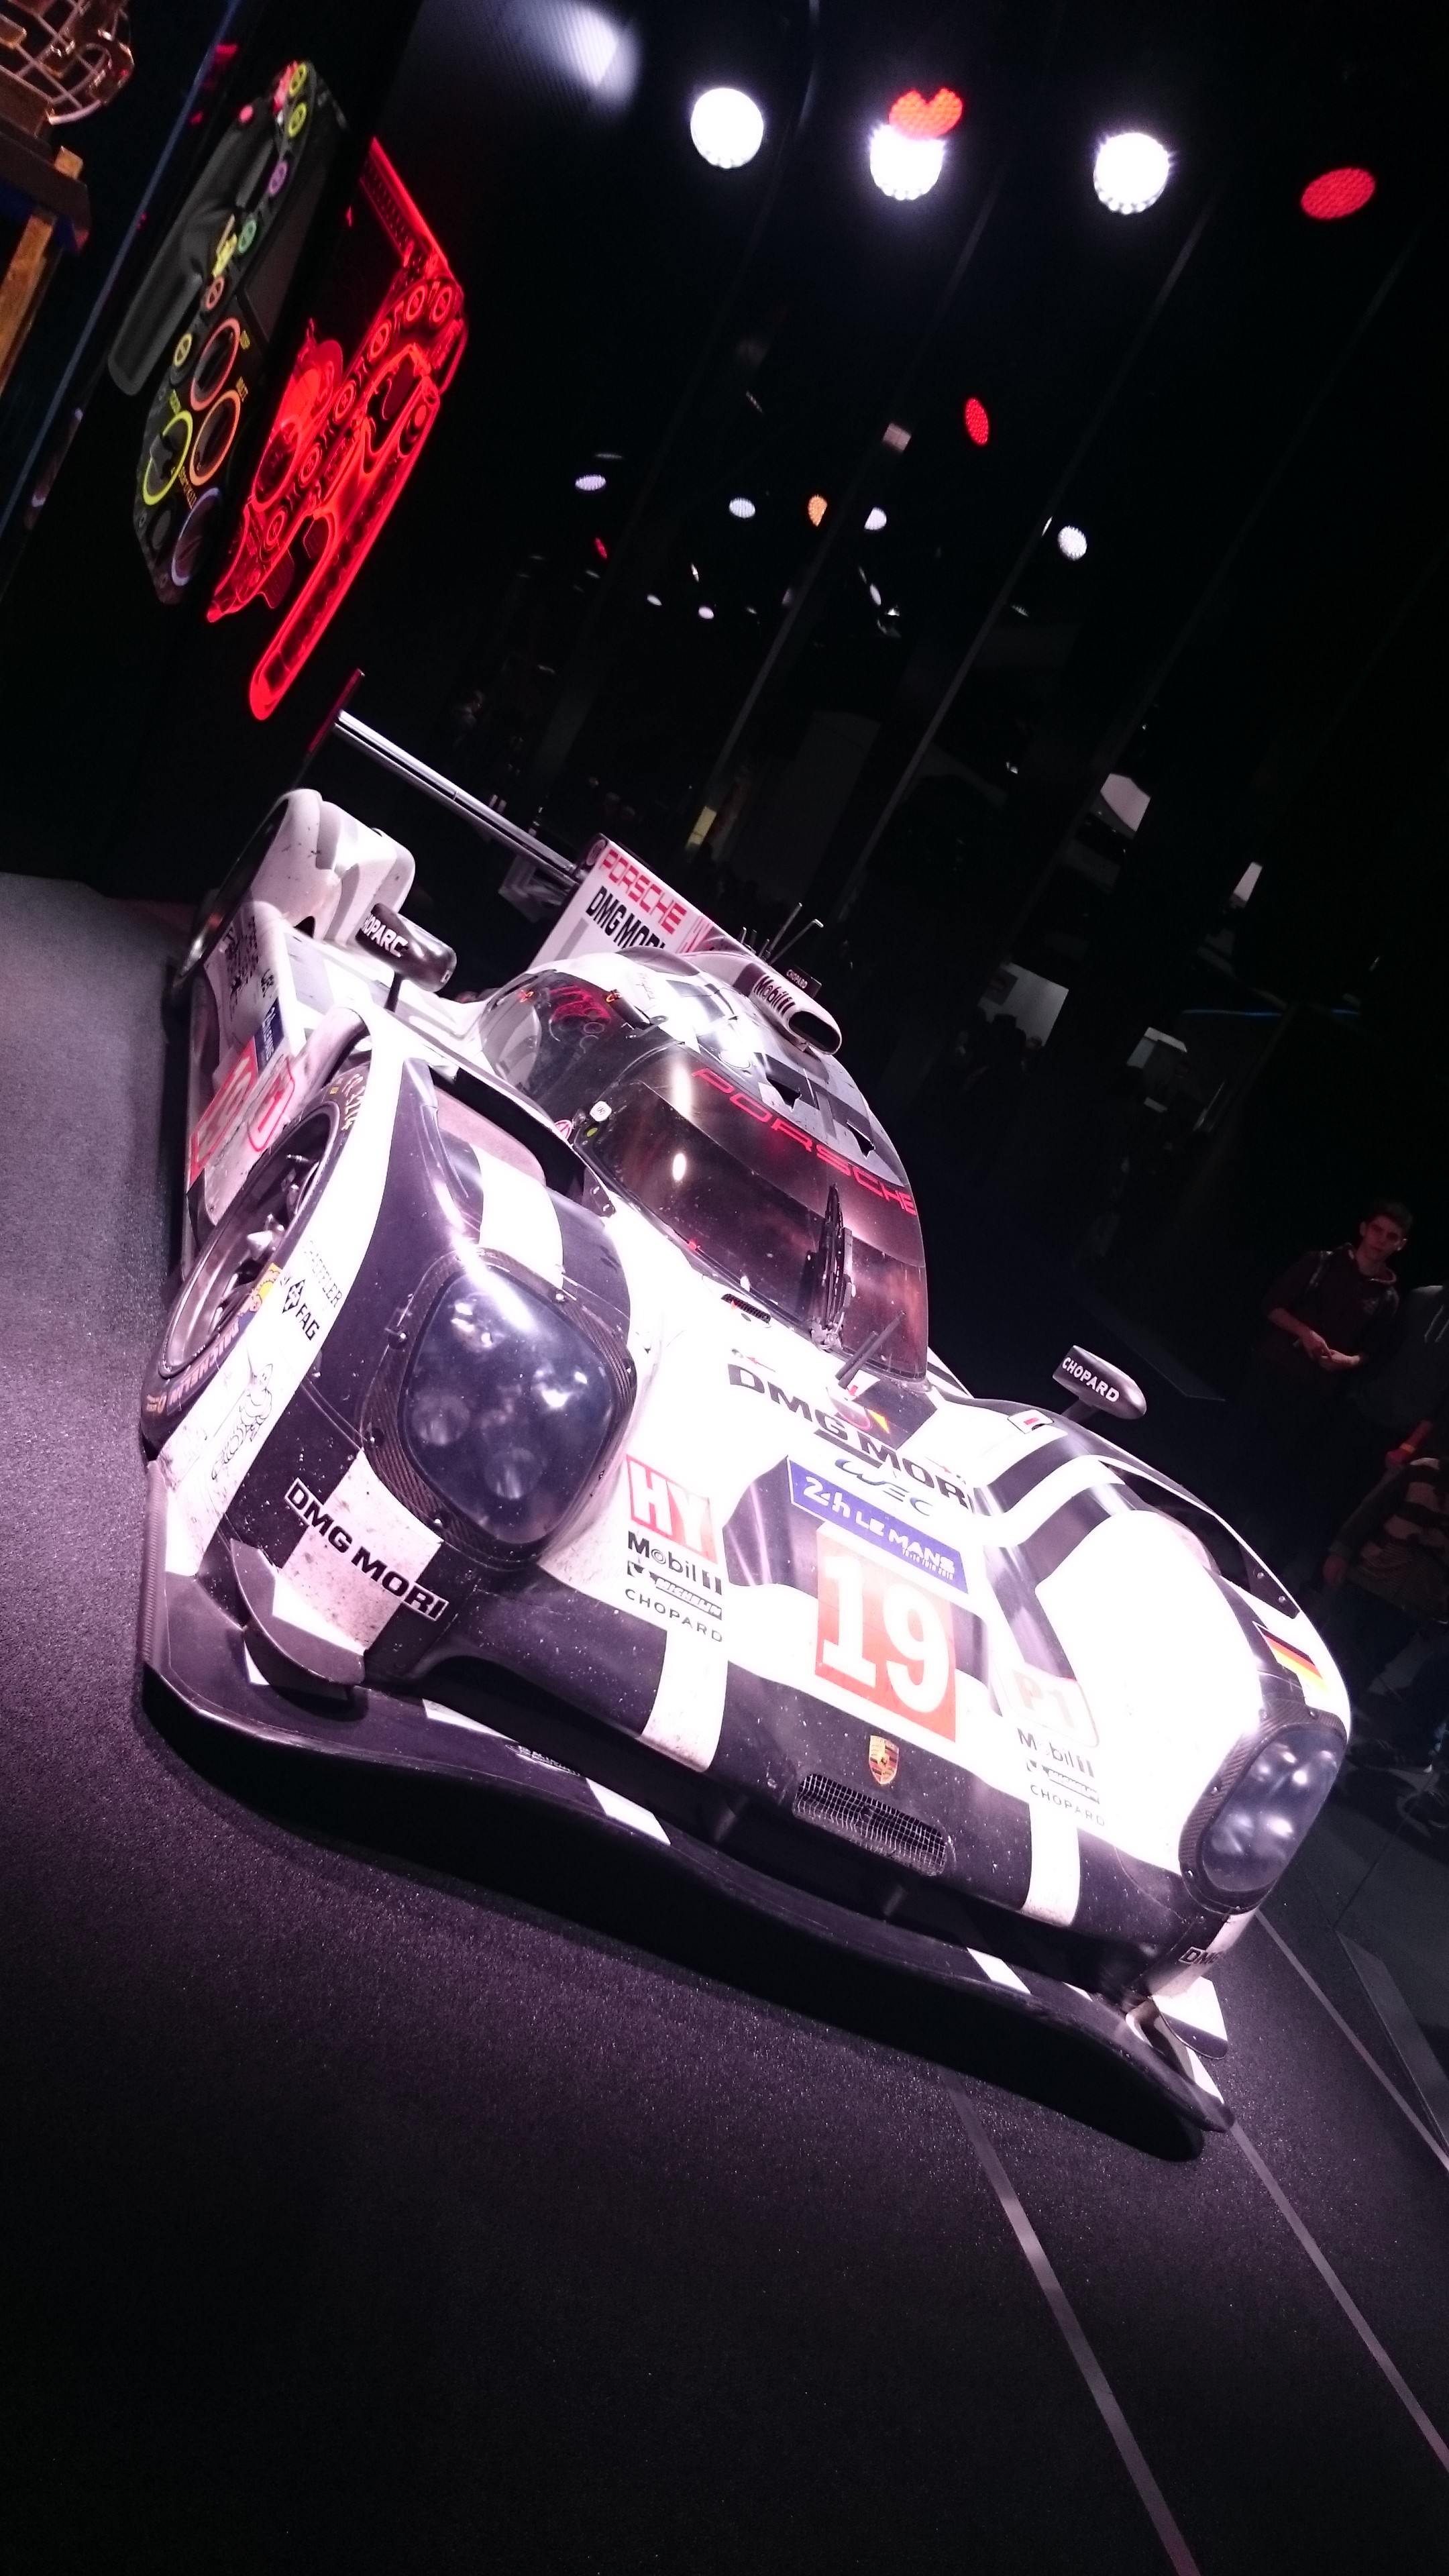 Fotos 360 Porsche 919 Hybrid (24h Le Mans) #VidePan en #IAA2015